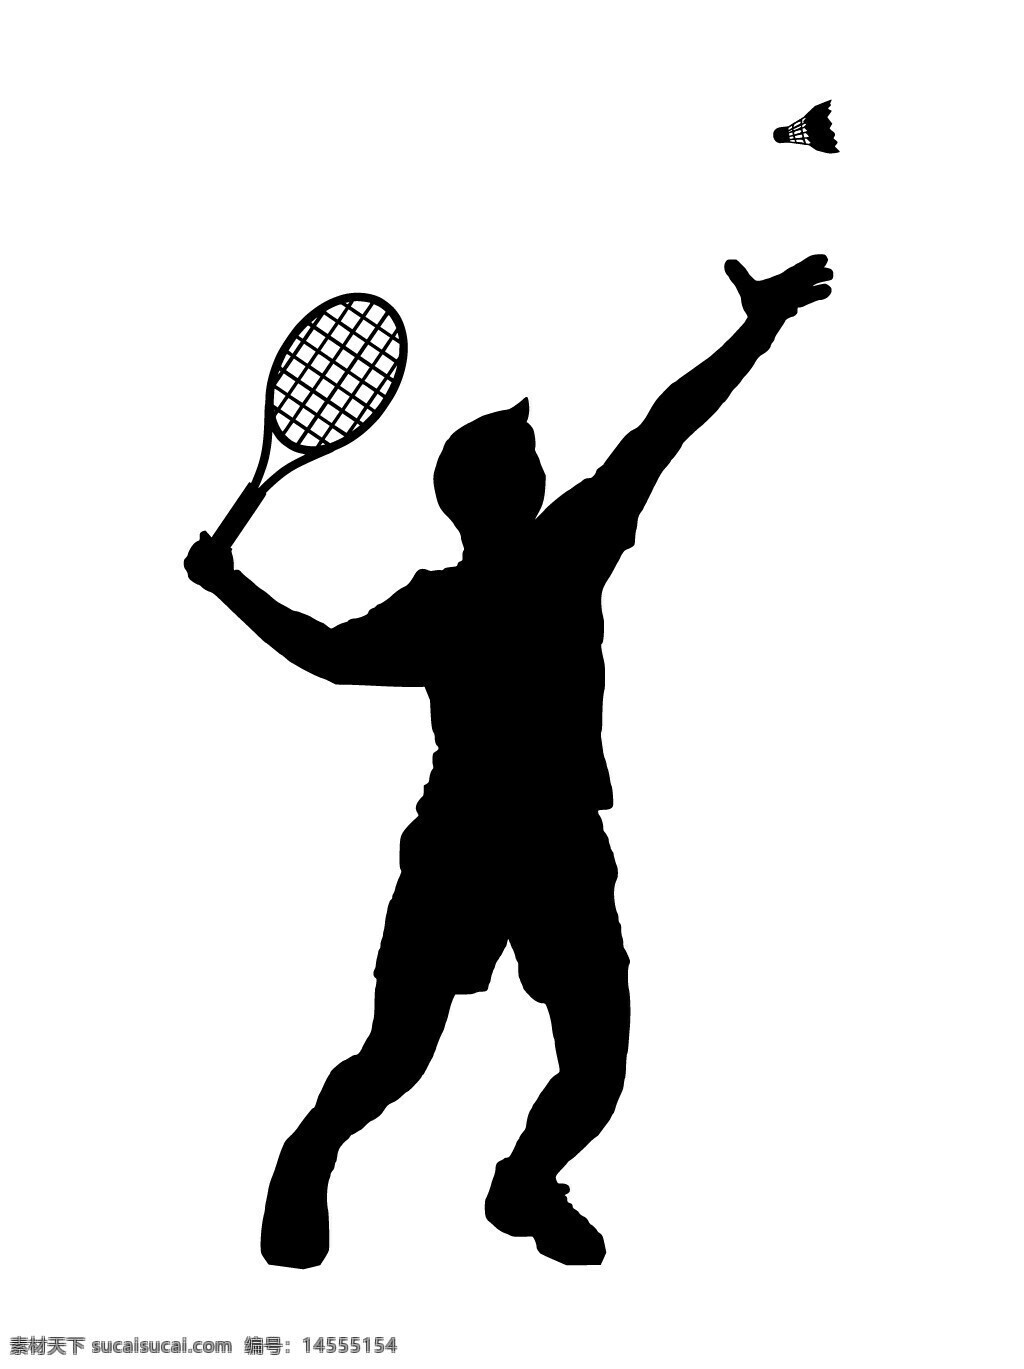 打羽毛球 打网球 运动 人物剪影 体育剪影 体育项目 矢量素材